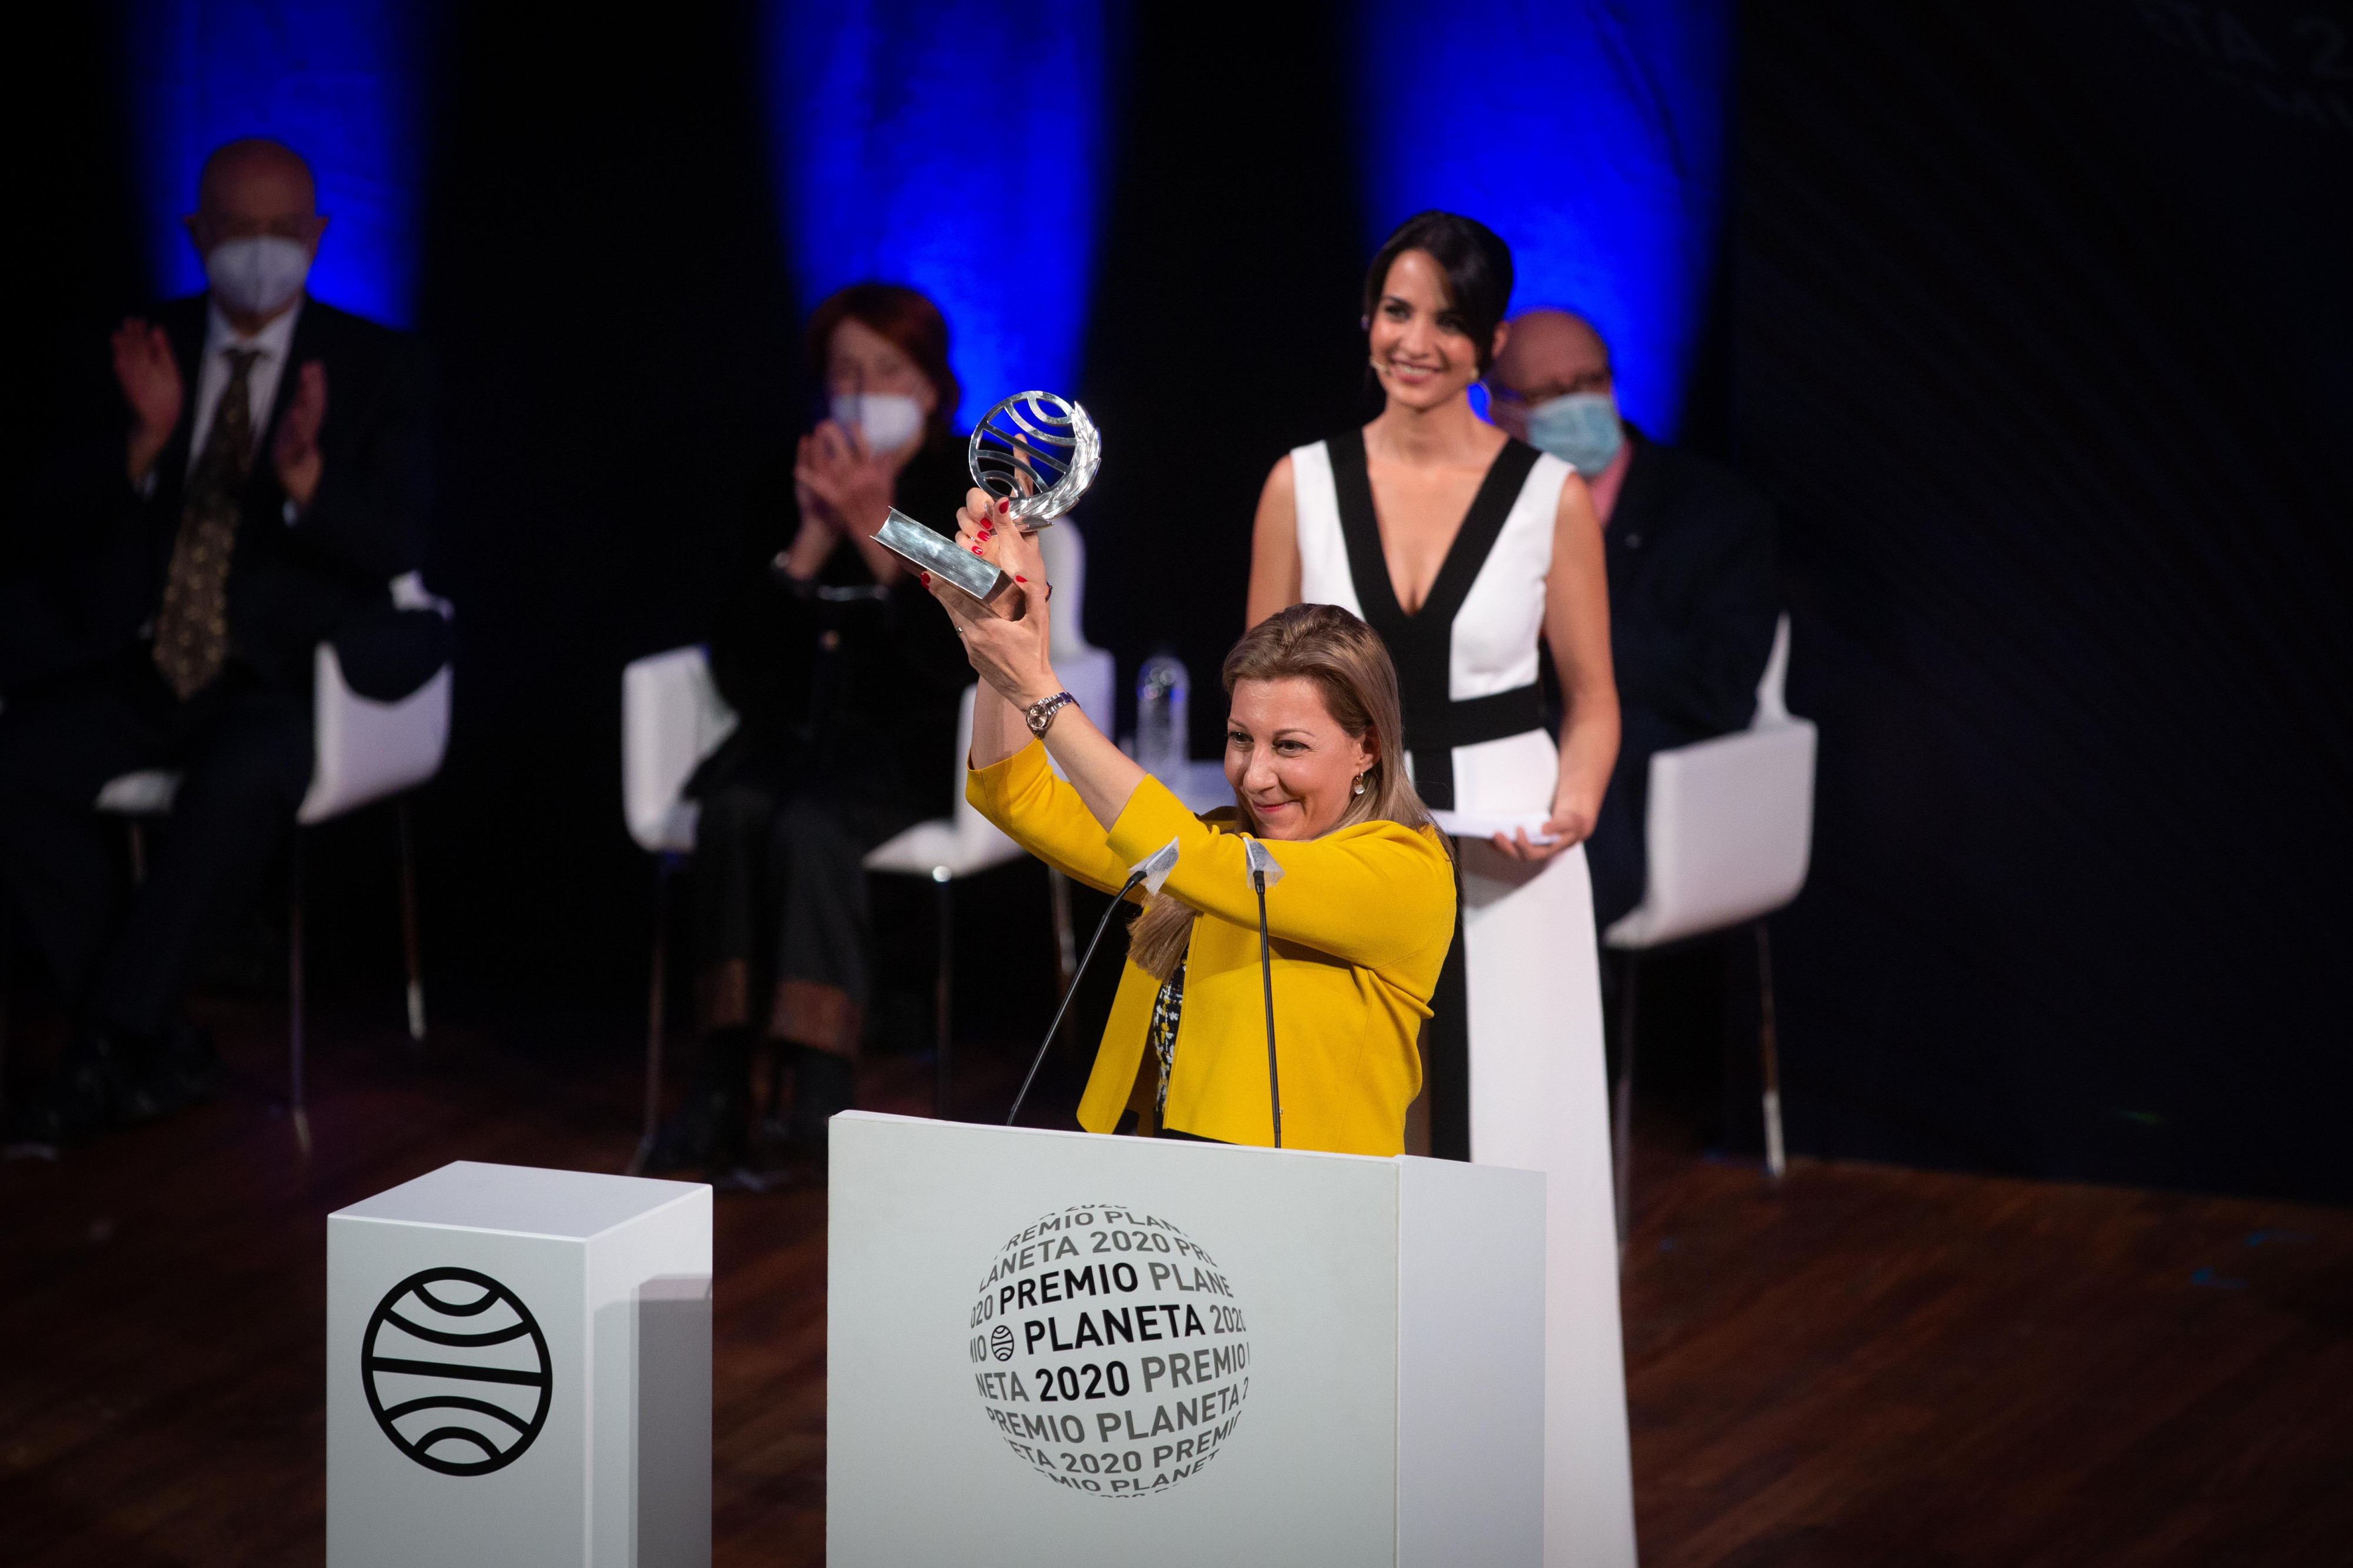 La escritora Eva García Sáenz de Urturi sostiene el Premio Planeta / EP